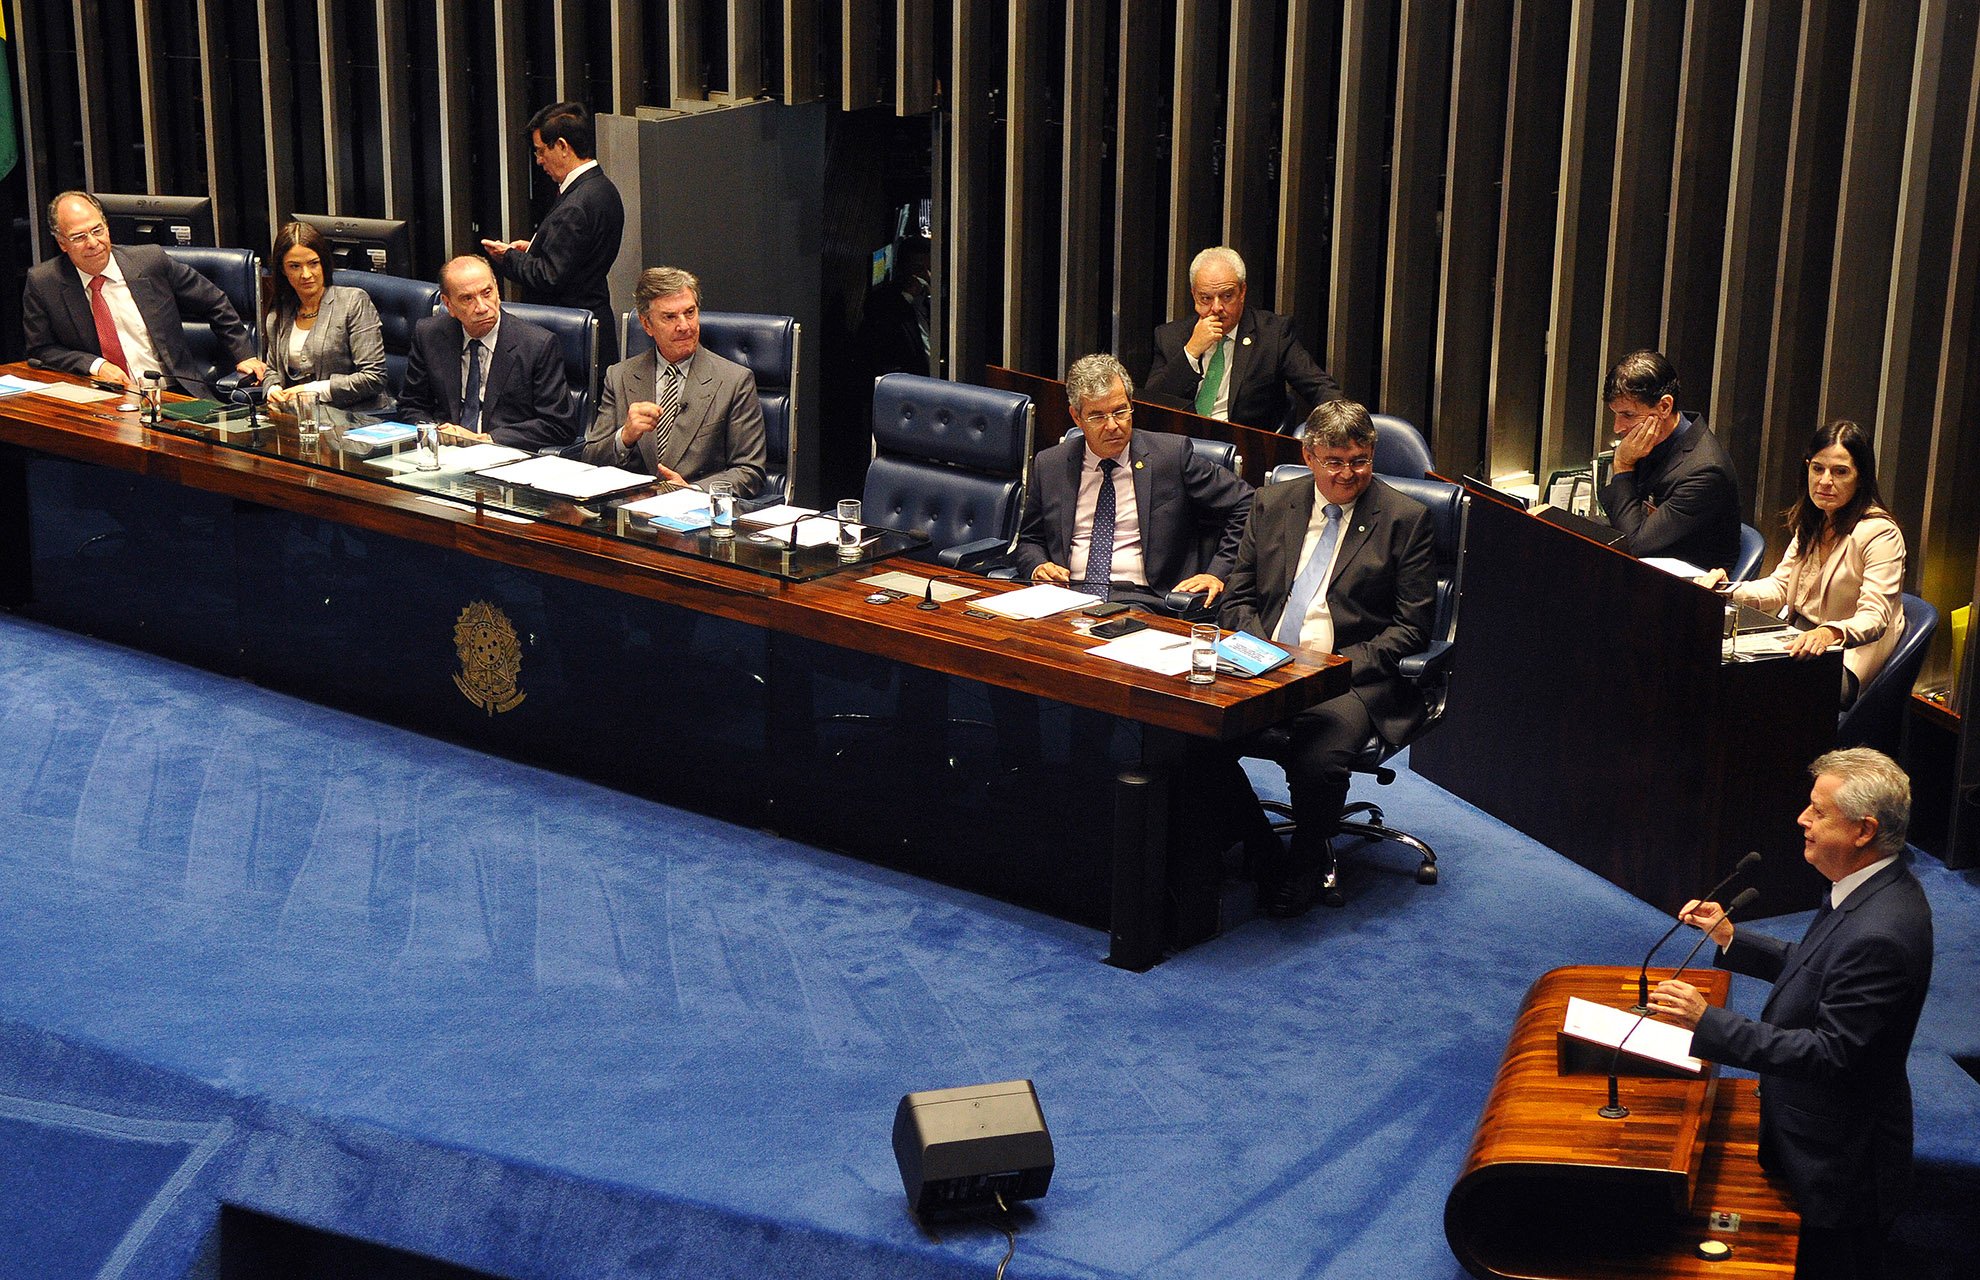 Como parte dos preparativos para o 8º Fórum Mundial da Água, que ocorrerá em Brasília de 18 a 23 de março, foi criada no Senado Federal, nesta quinta-feira (22), subcomissão temporária para tratar do evento. O governador de Brasília, Rodrigo Rollemberg, participou da solenidade.